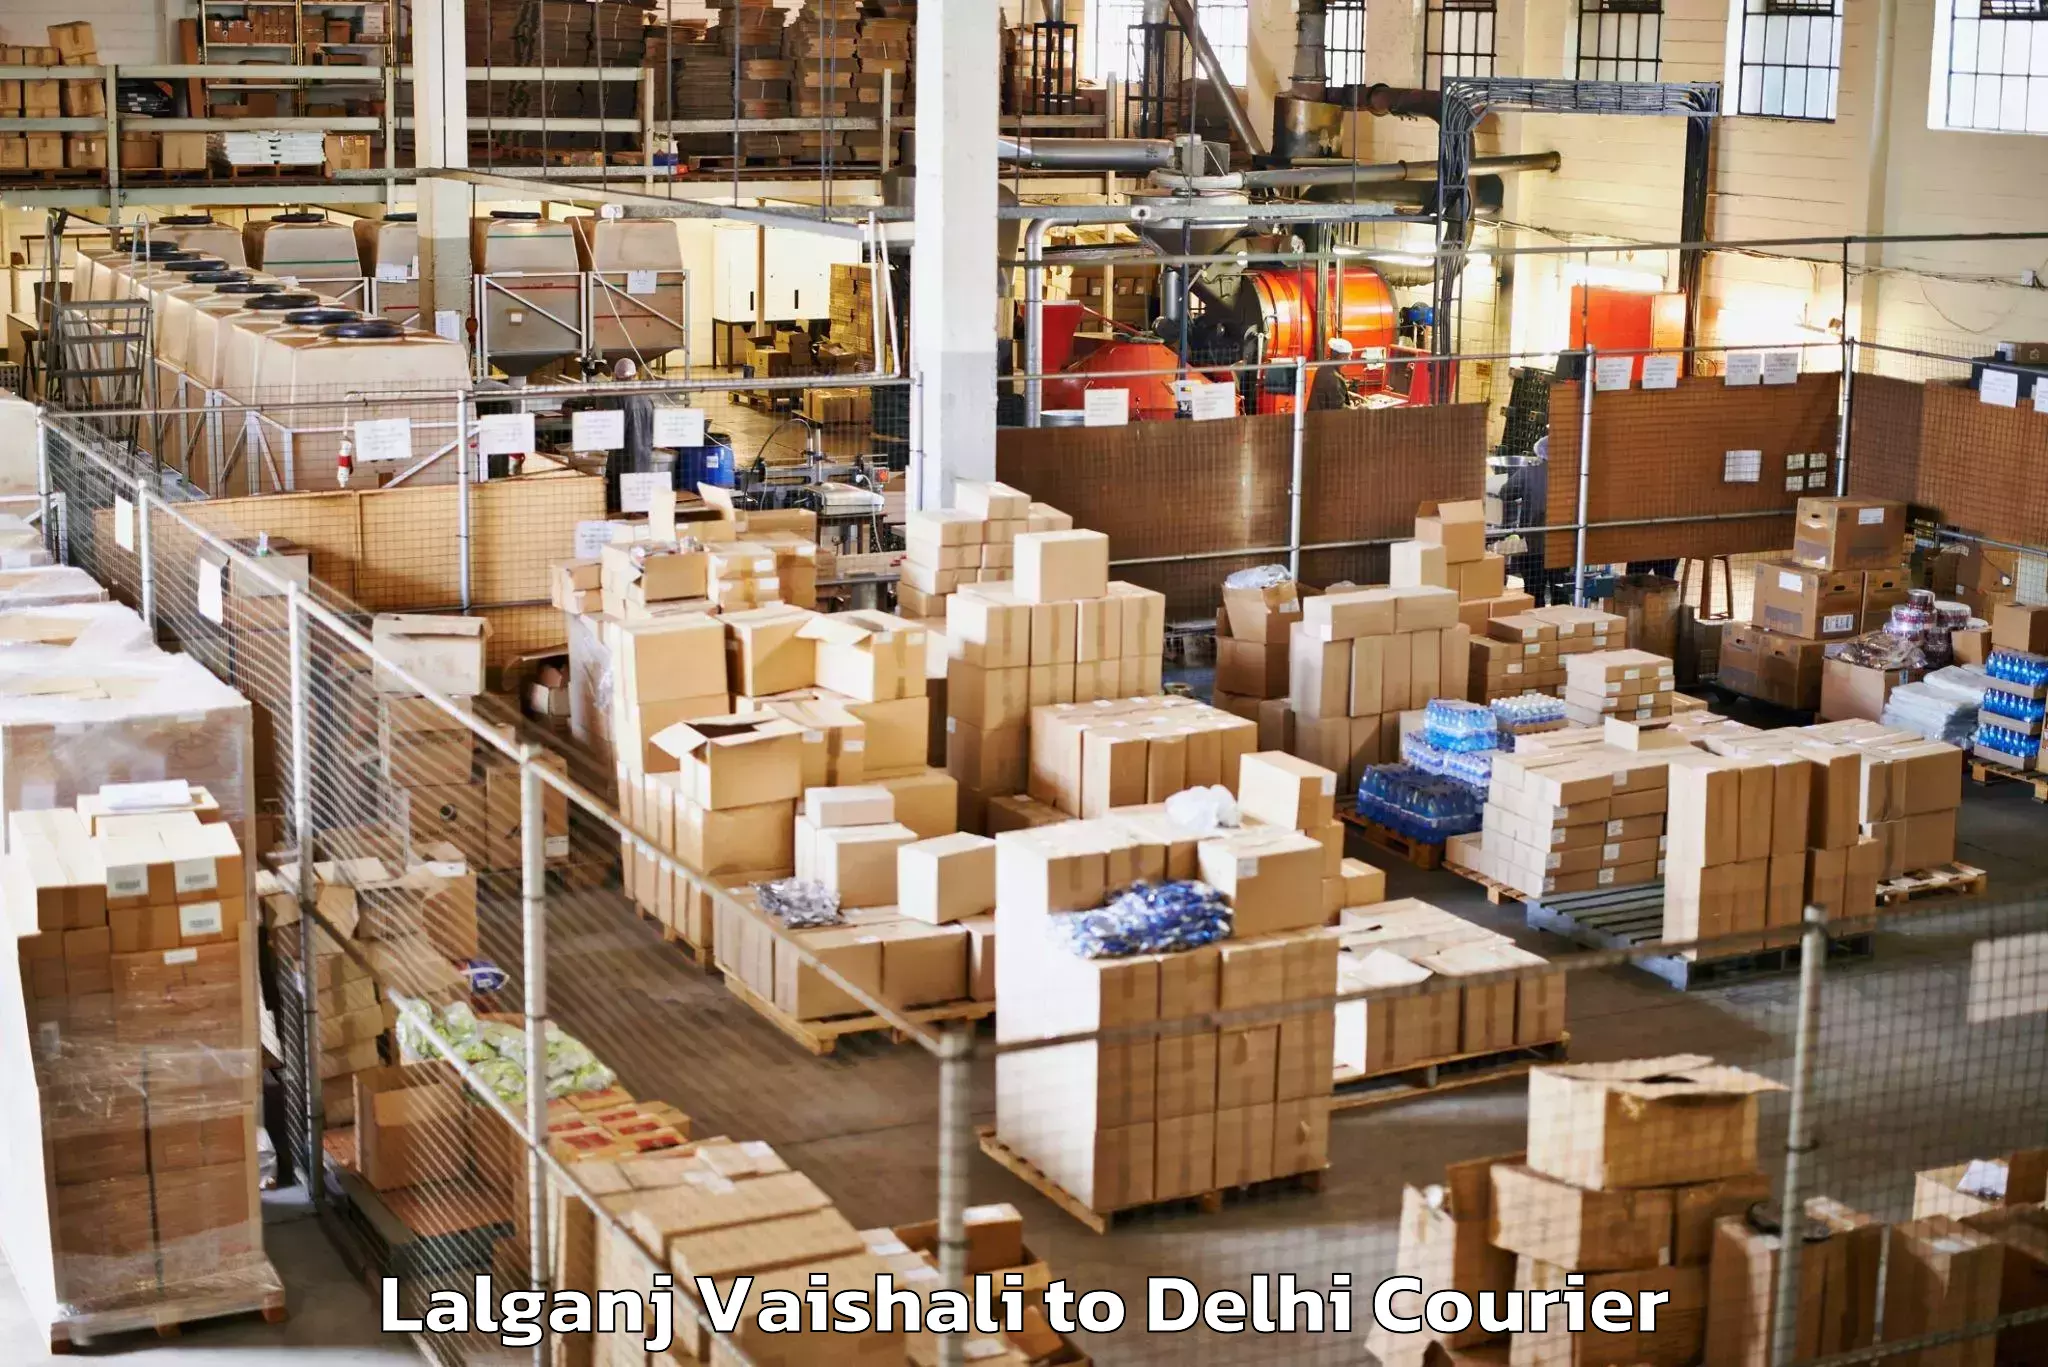 Luggage transport solutions in Lalganj Vaishali to NIT Delhi